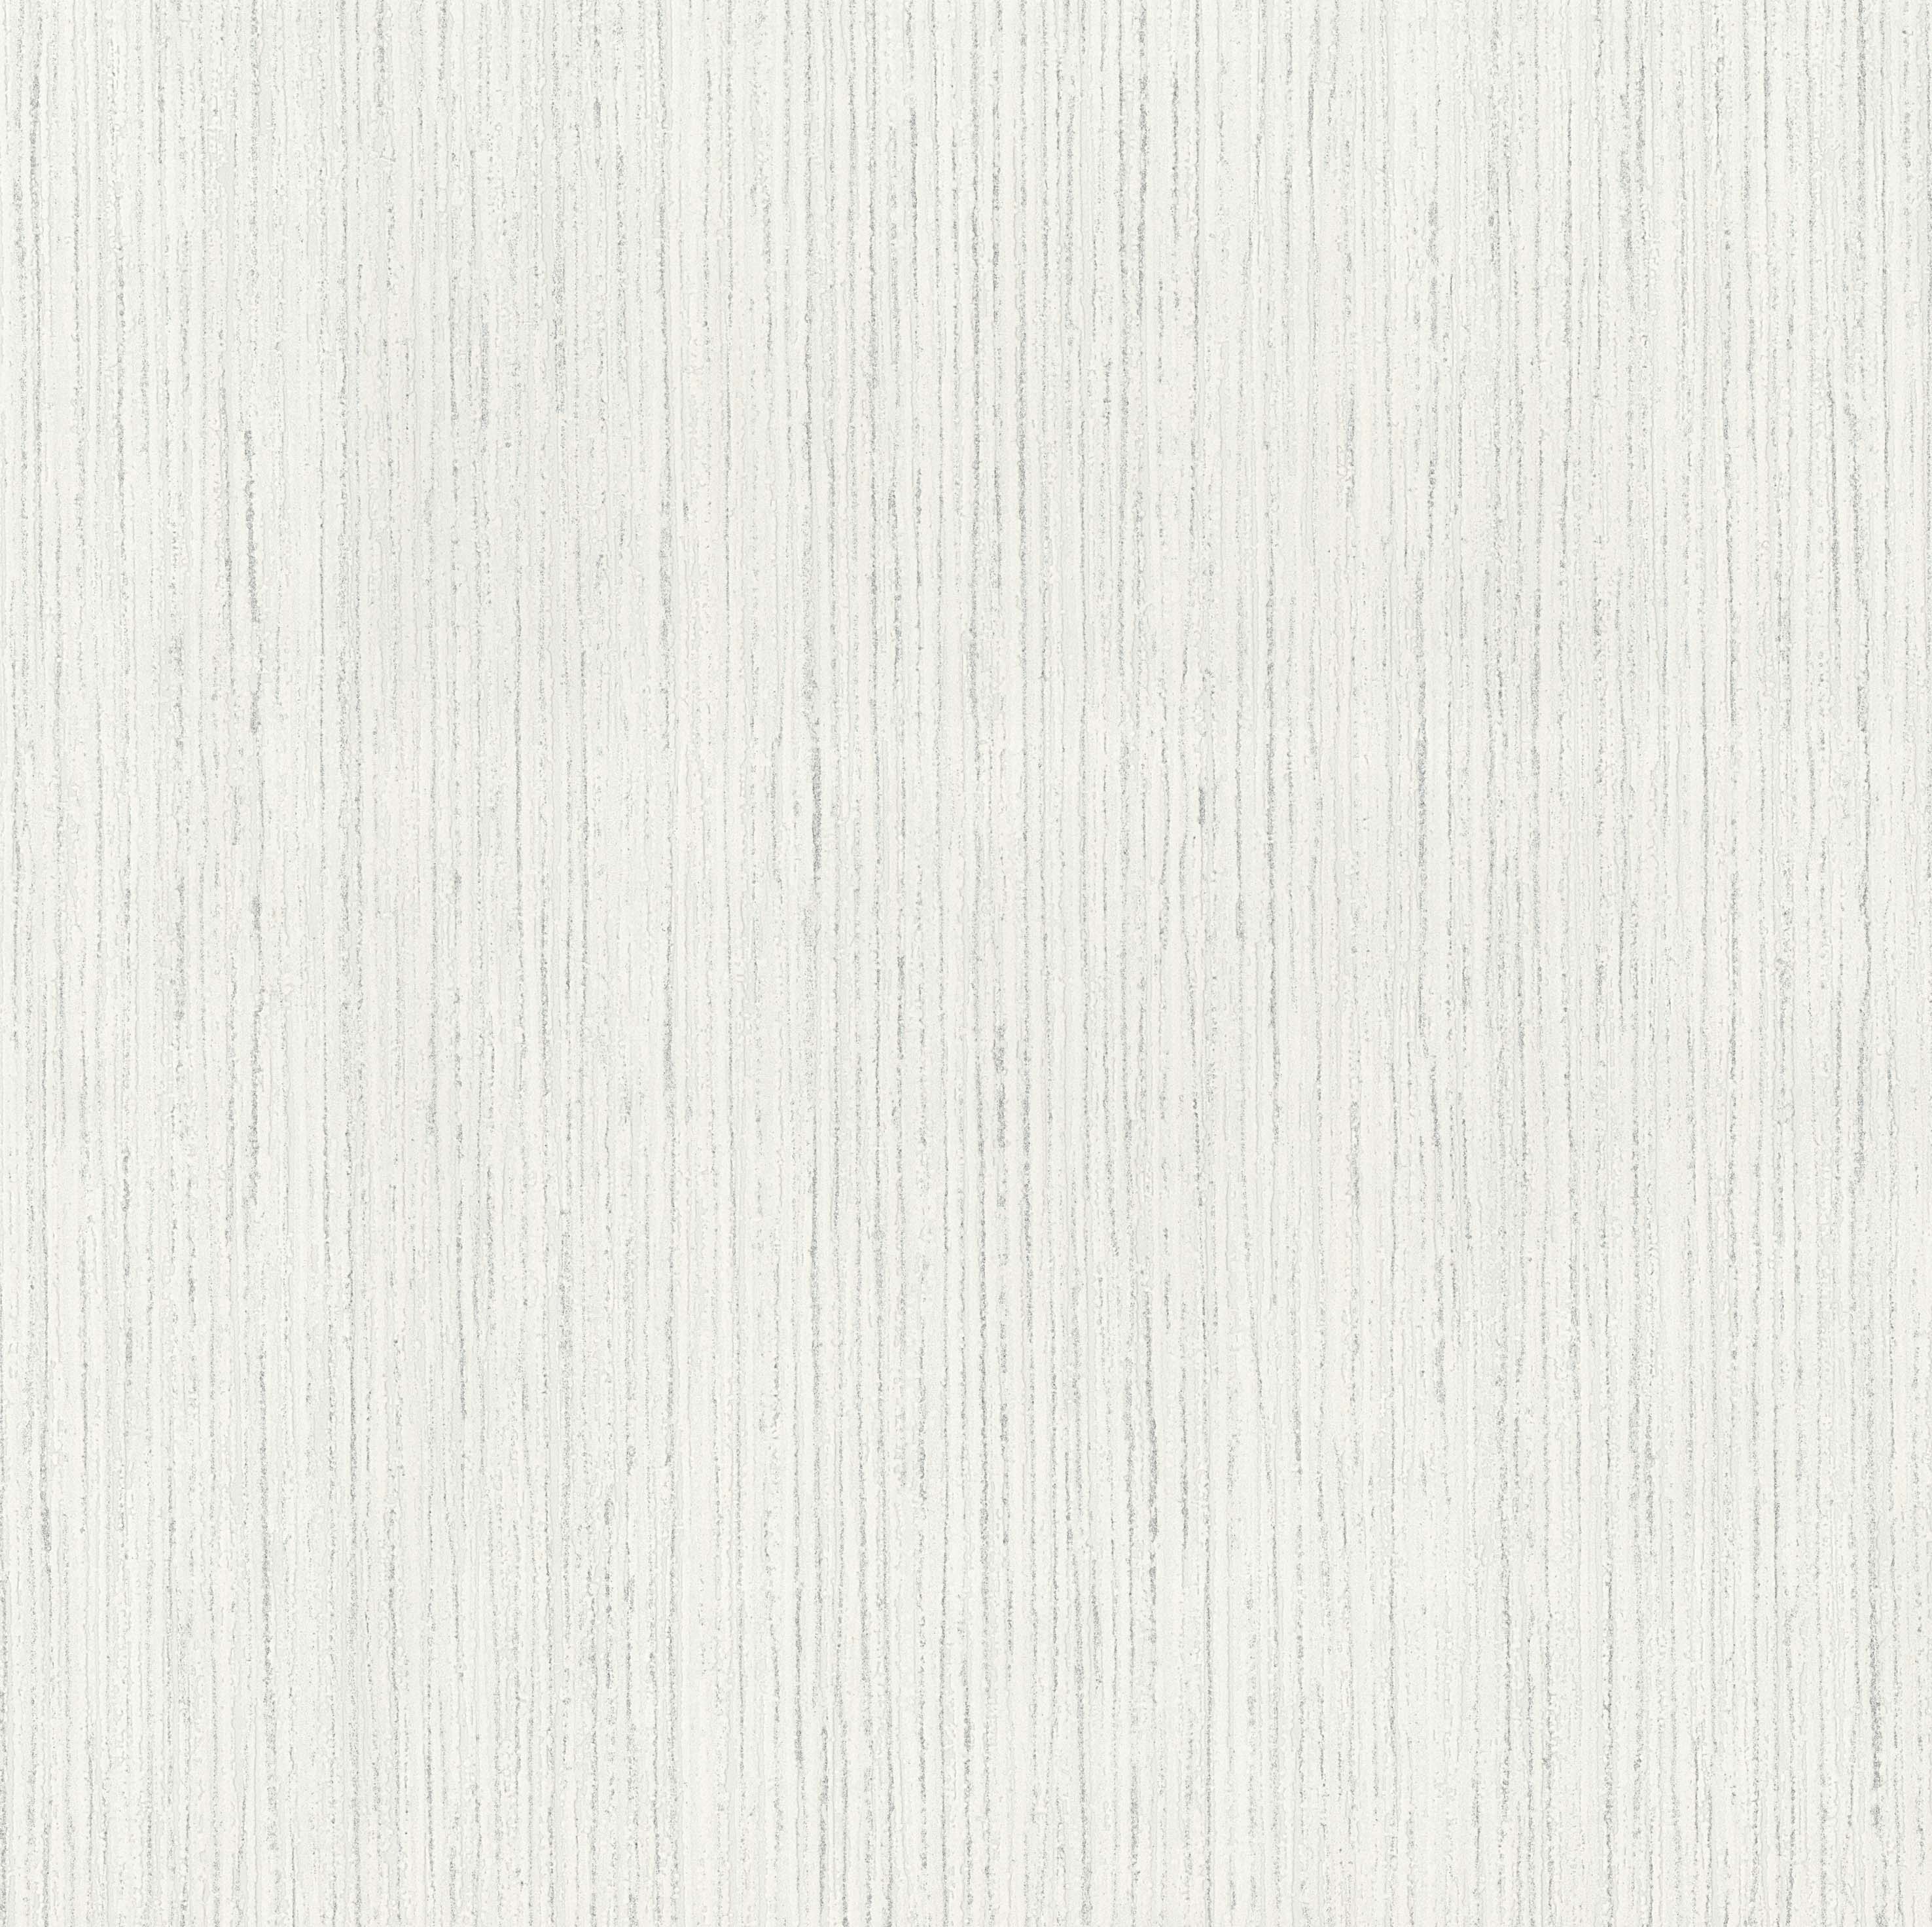 Silver Birch Texture White Blown Vinyl Wallpaper By P S International